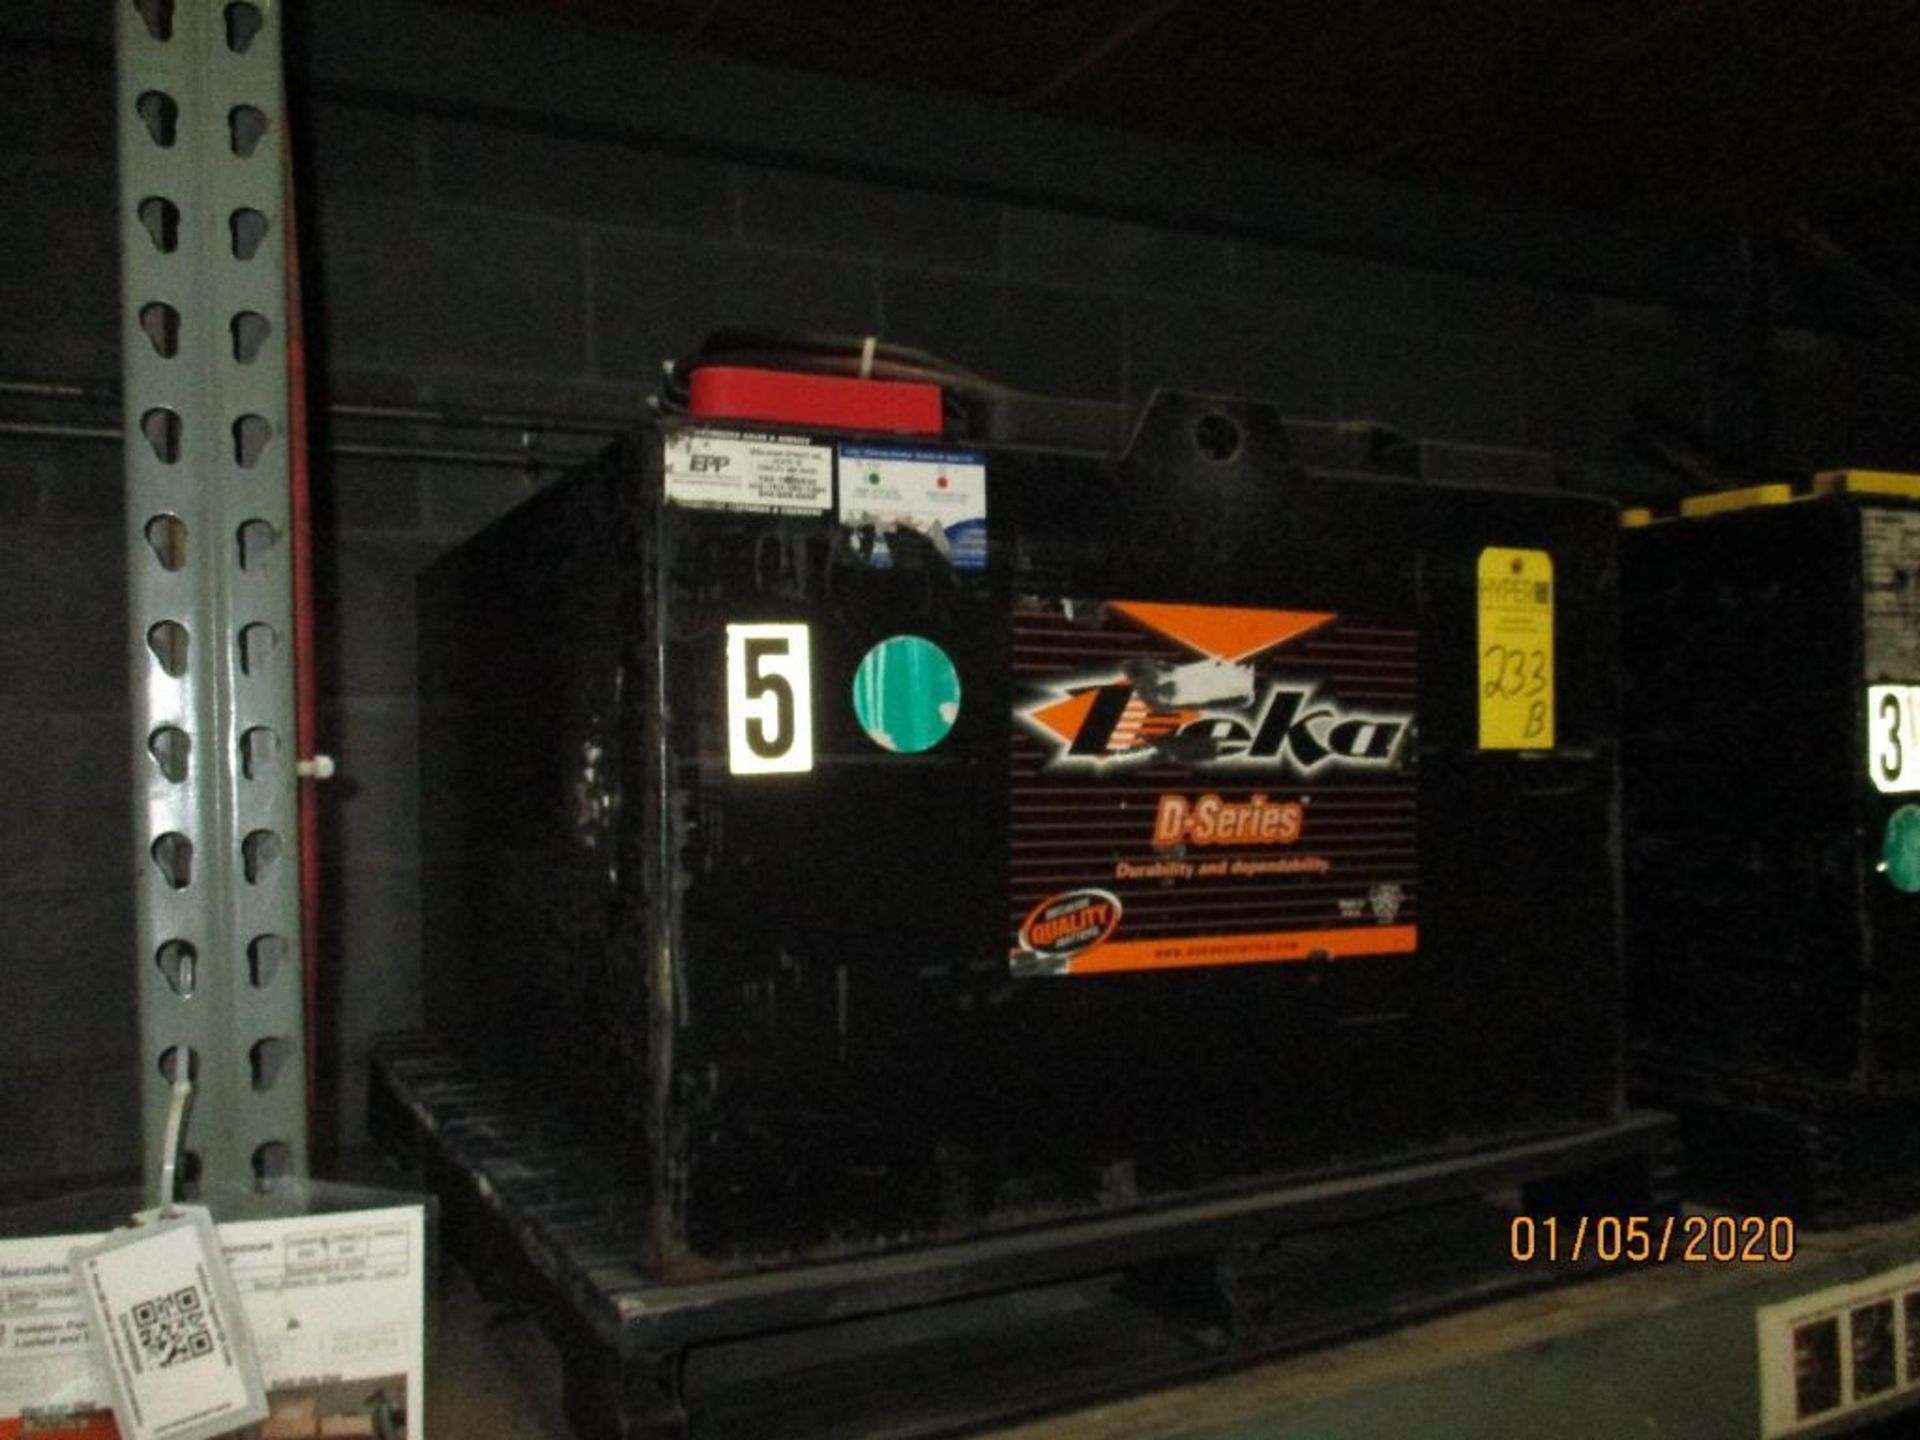 Deka Forklift Battery (5) 850 Amp Hours, 48V